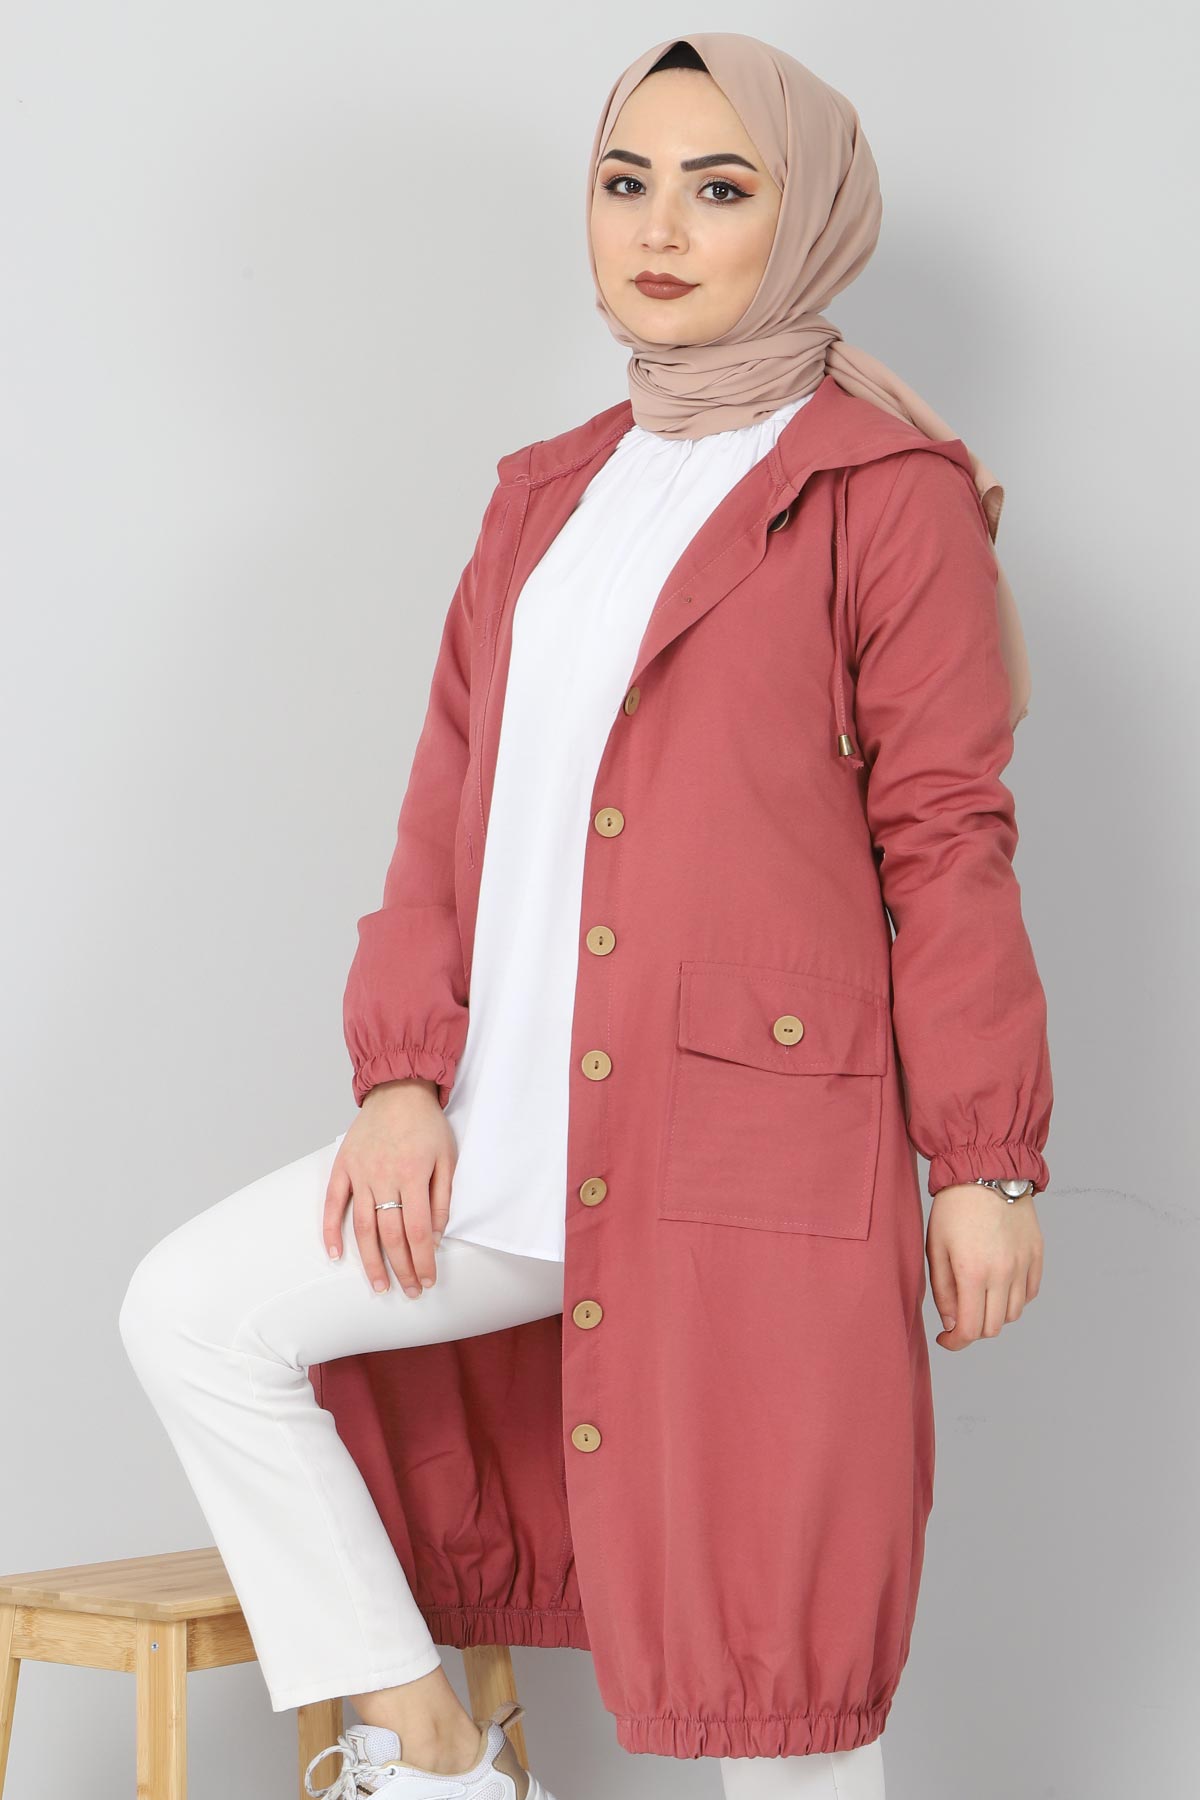 Tesettür Dünyası - Elastic Skirt Hijab Cape TSD0080 Coral